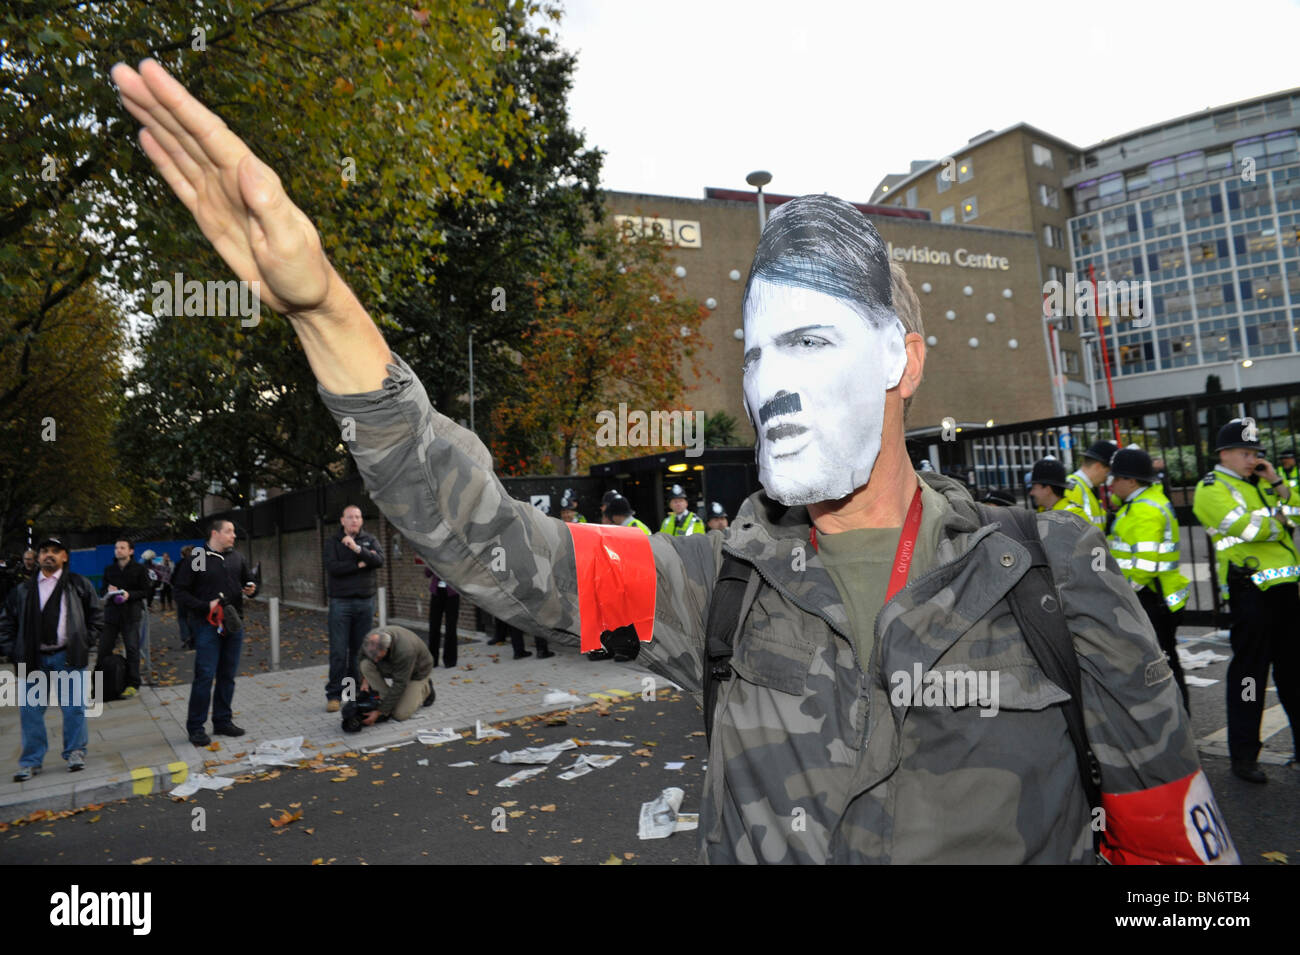 Griffin/Hitler figure fait salut nazi à s'unir contre le fascisme à protester contre la BBC Nick Griffin apparaissant sur l'heure des questions. Banque D'Images